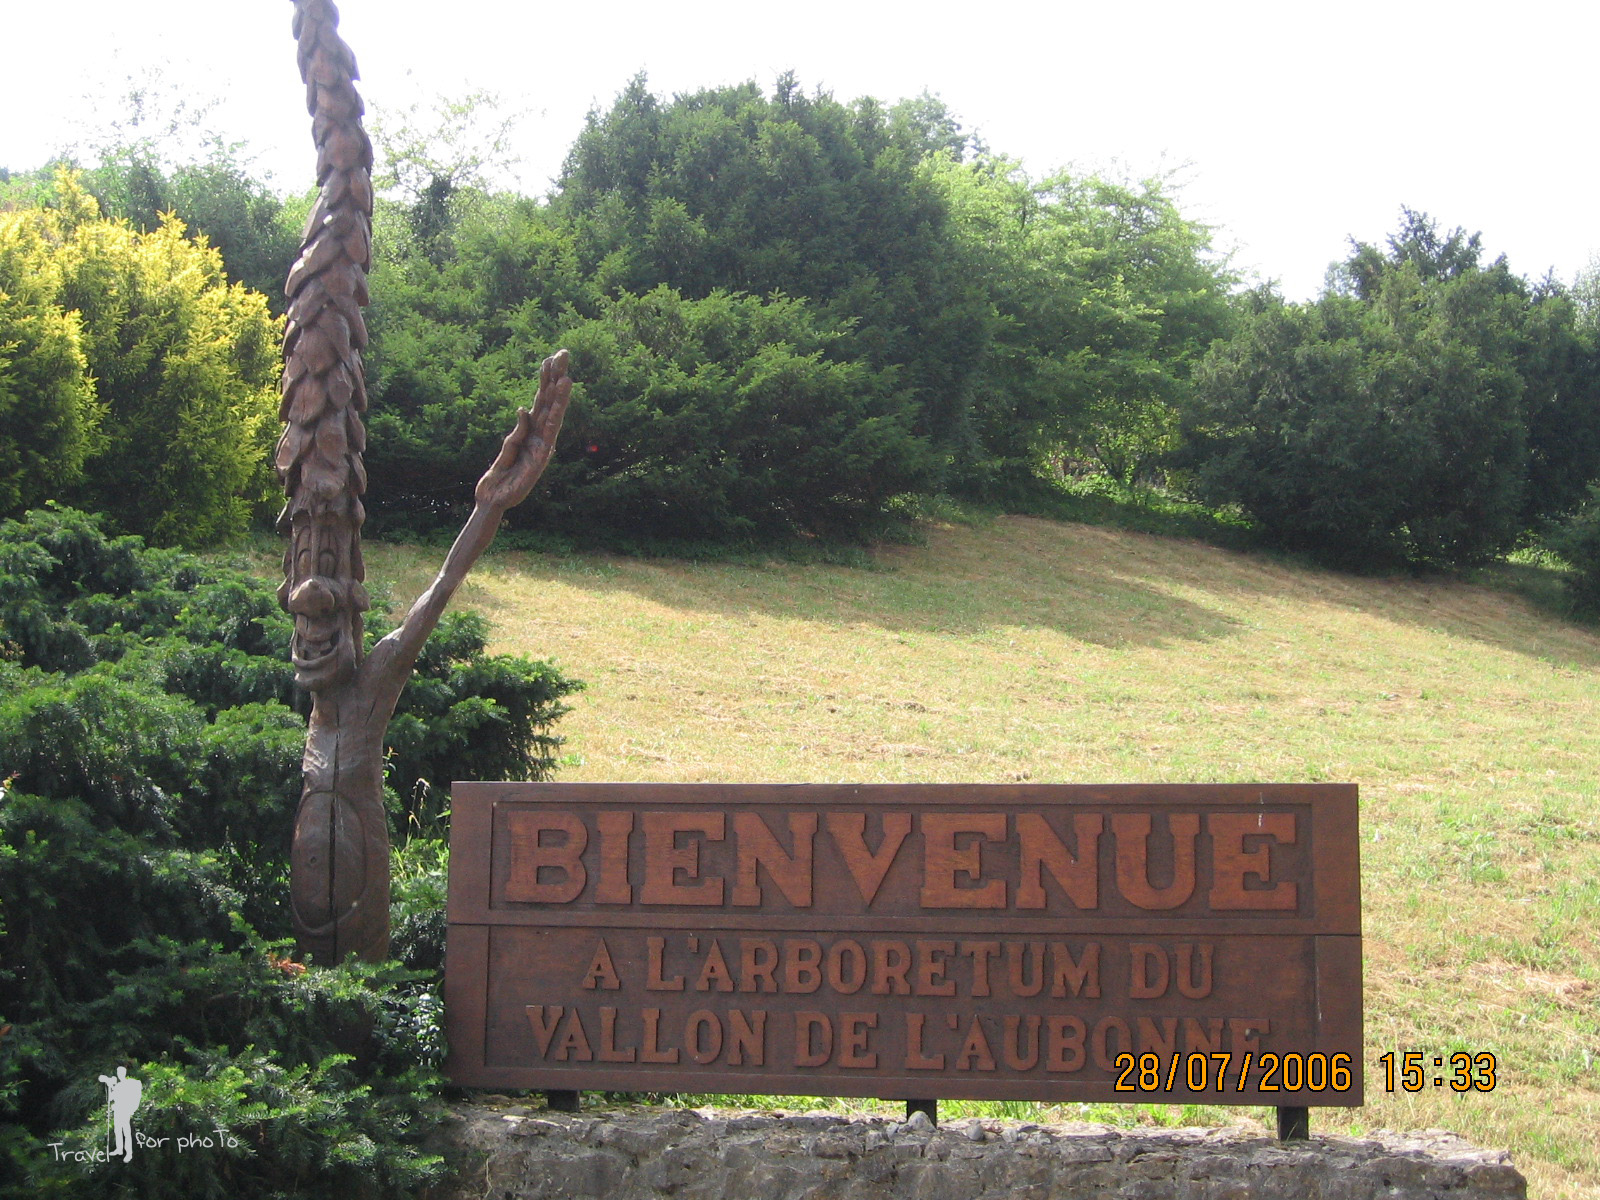 L'arboretum du Vallon de l'Aubonne 